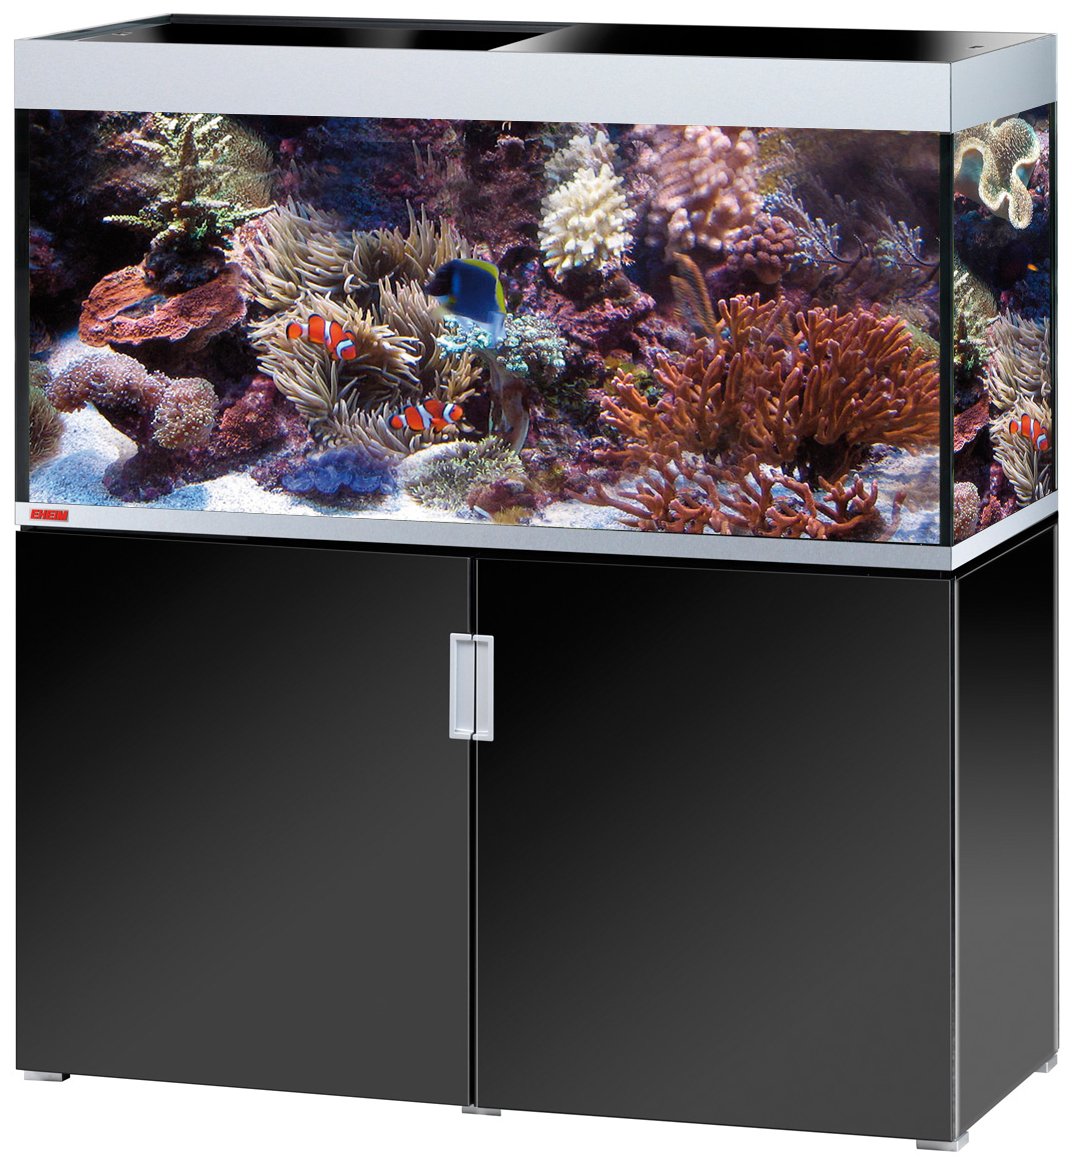 eheim-incpiria-marine-400-noir-brillant-argent-kit-aquarium-130-cm-400-l-avec-meuble-et-eclairage-t5